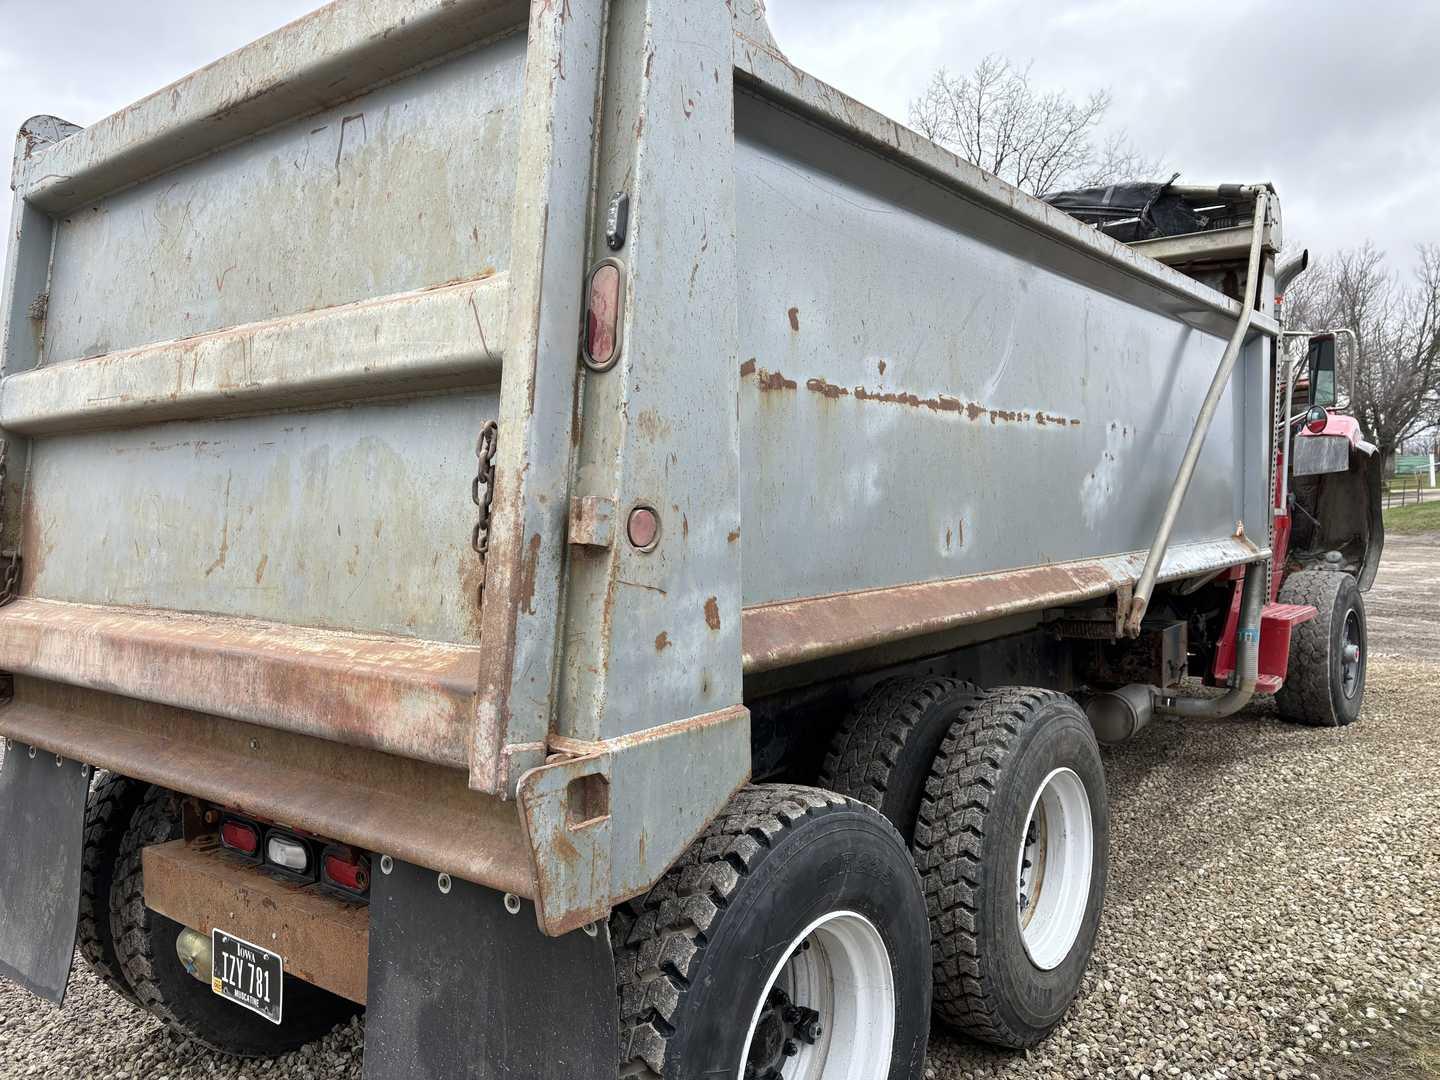 Ford L8000 Dump Truck